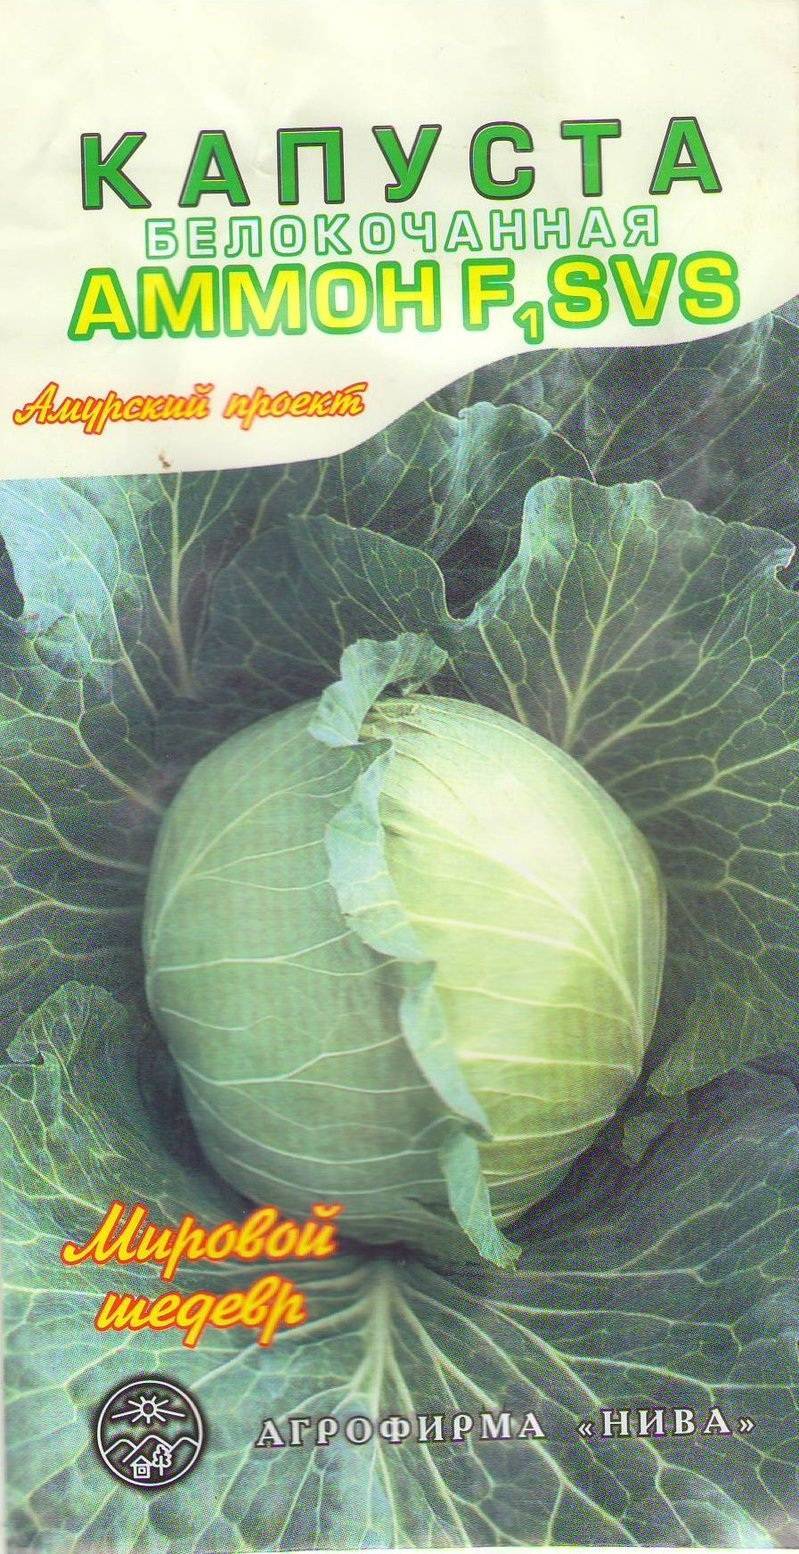 Капуста анкома f1: характеристика гибрида, отзывы о вкусовых качествах, описание урожайности сорта, фото семян